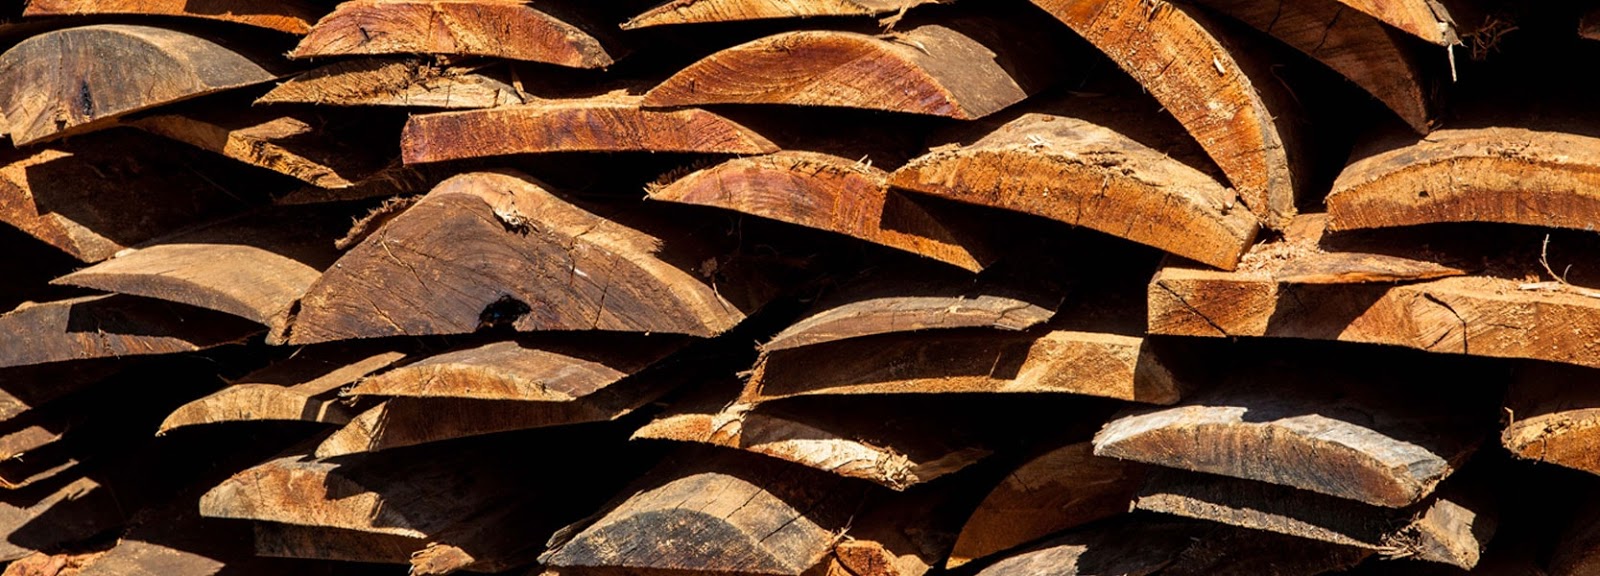 Moçambique: Exploração ilegal de madeira lesa Moçambique em 180 ME por ano